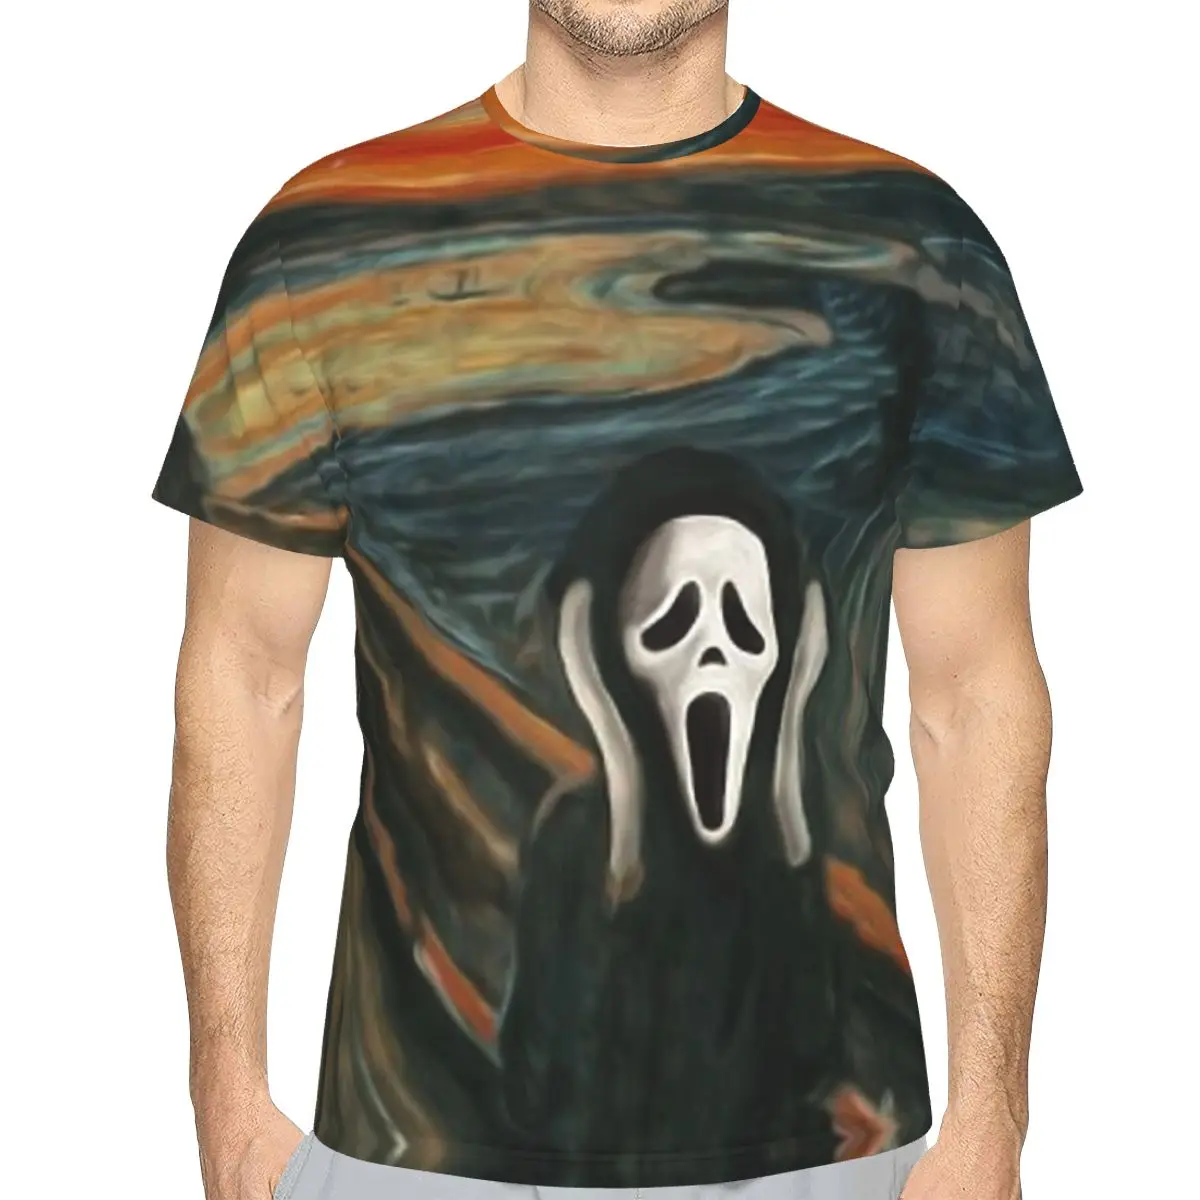 

От Edvard Munch пародия стиль полиэстер футболка крик Сидни Прескотт фильм высшее качество Новый дизайн тонкая футболка с коротким рукавом